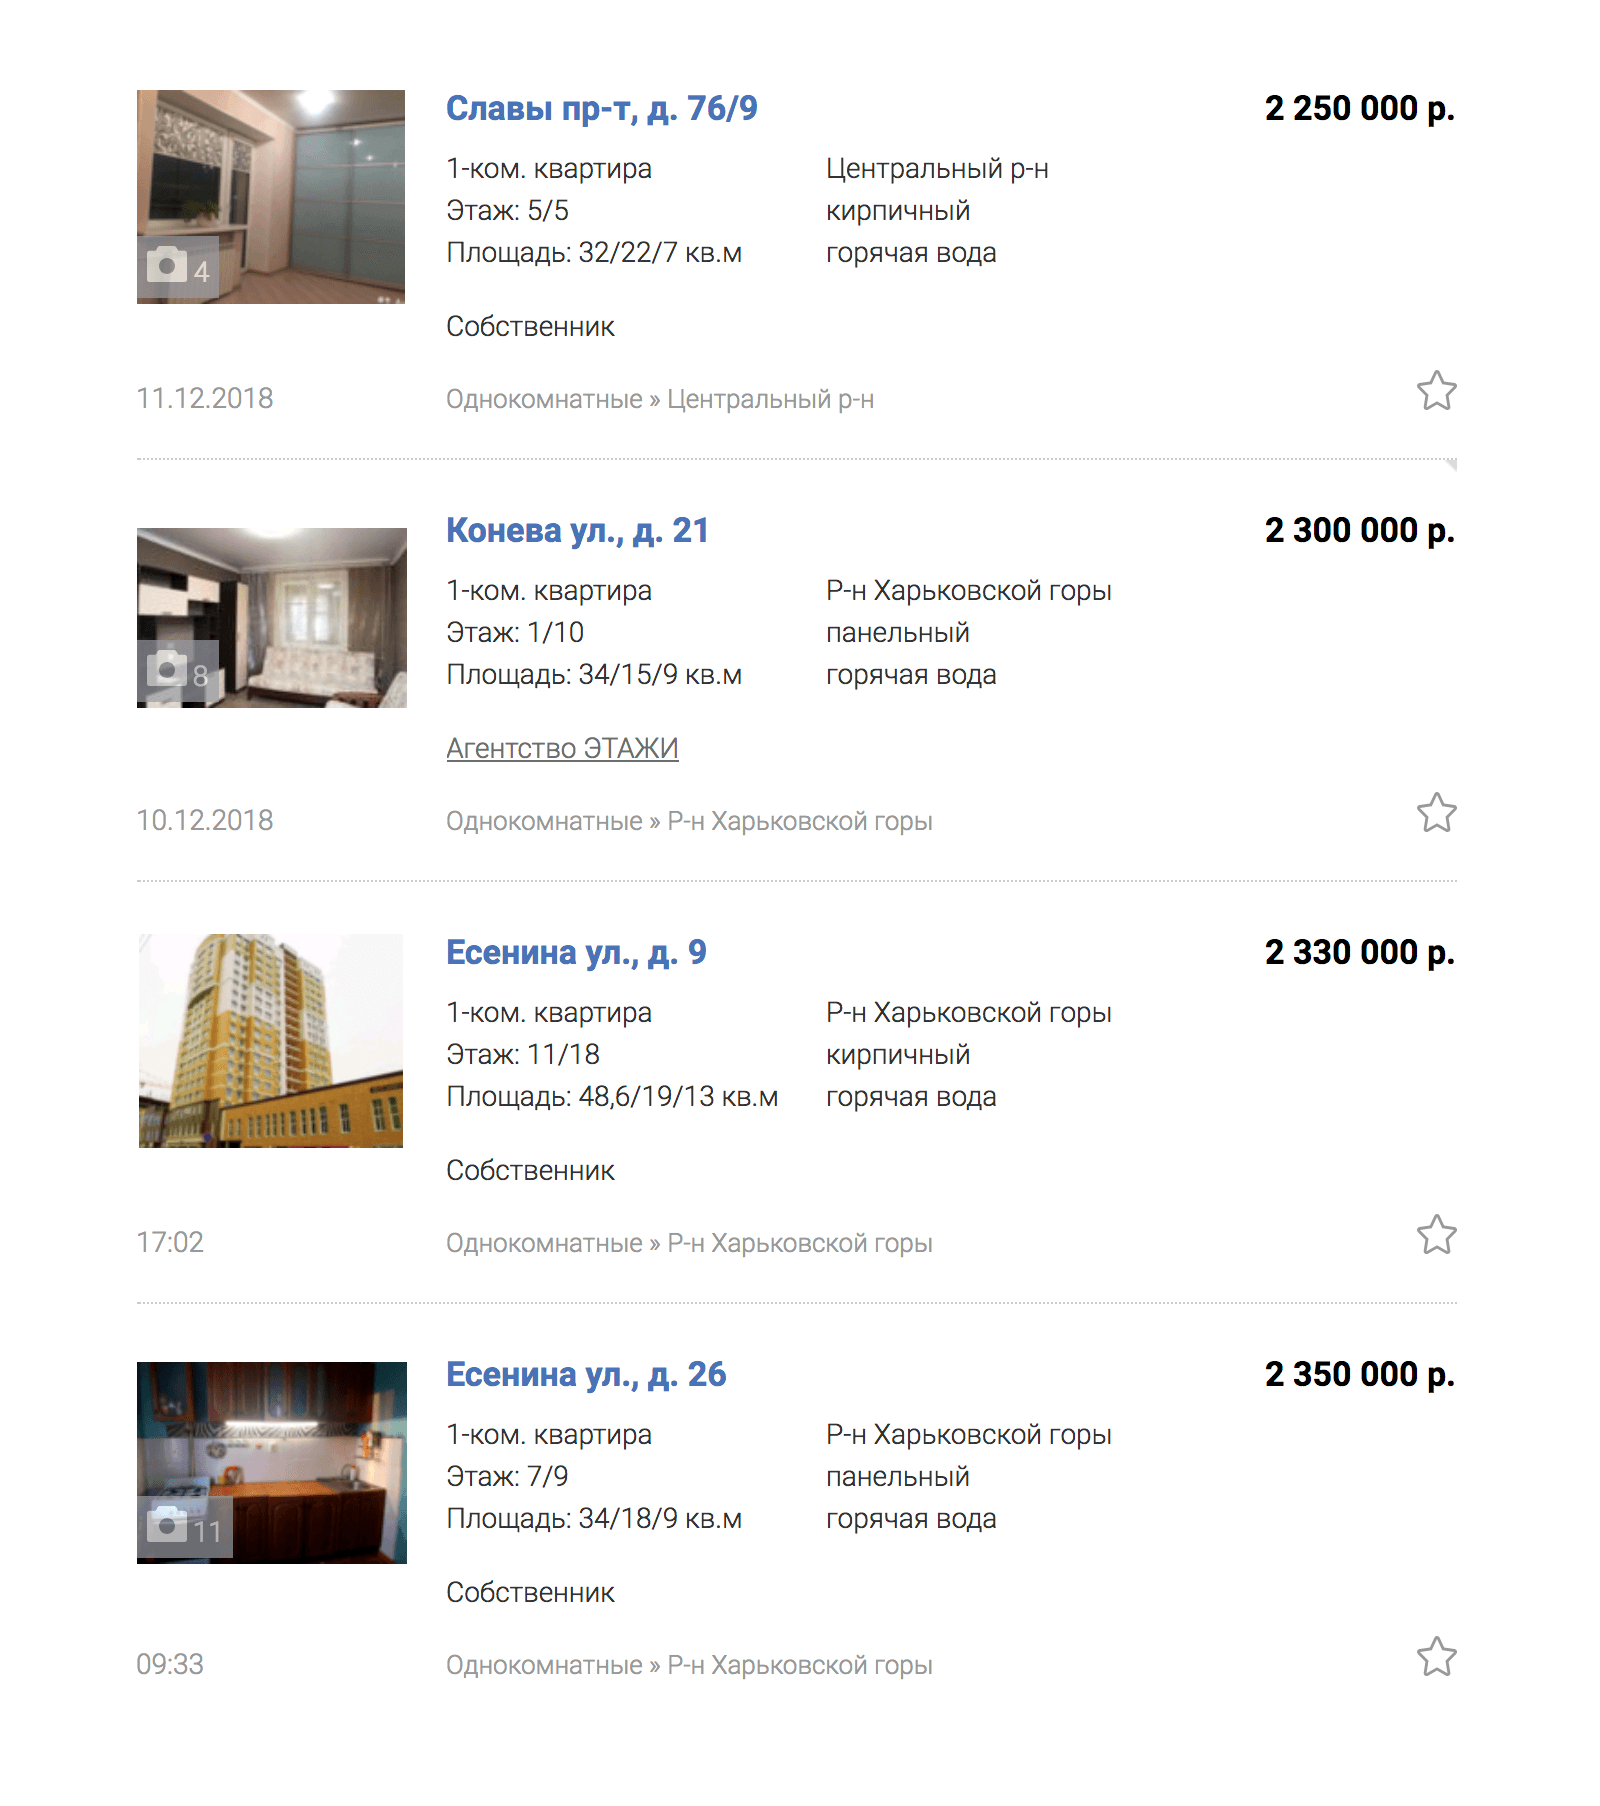 Цены на однокомнатные квартиры на сайте газеты «Моя реклама» начинаются от 2,2 млн рублей